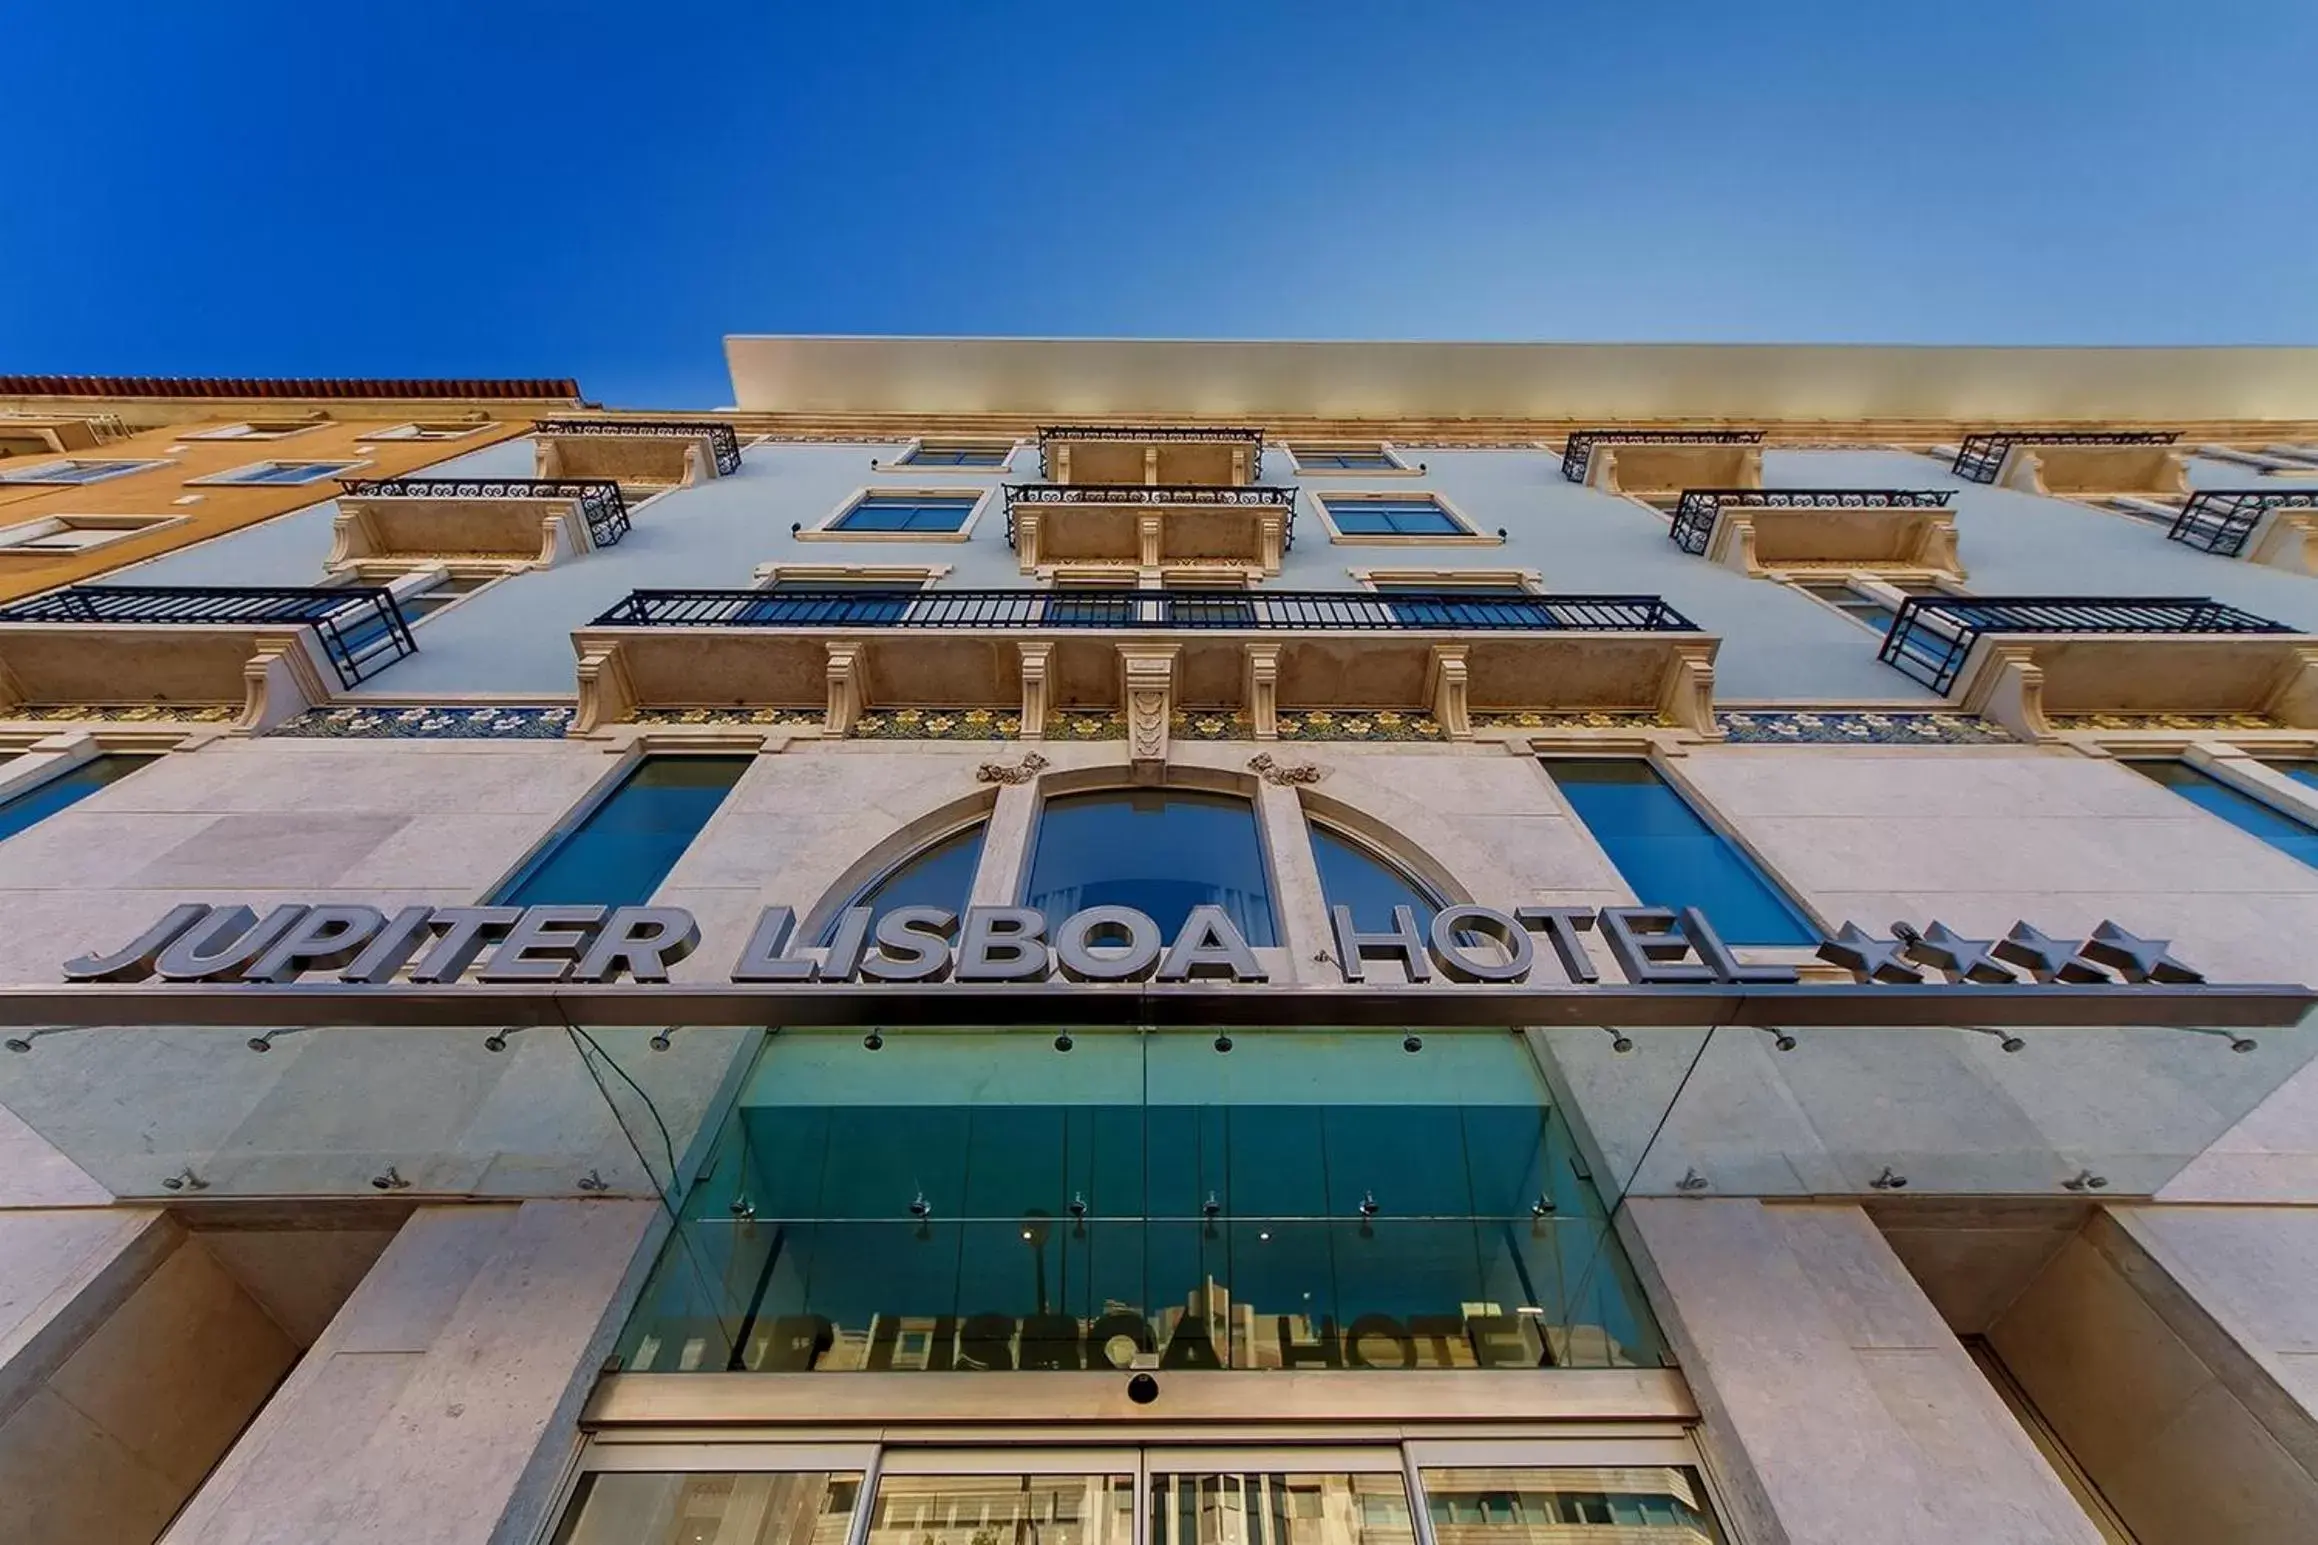 Off site, Property Building in Jupiter Lisboa Hotel